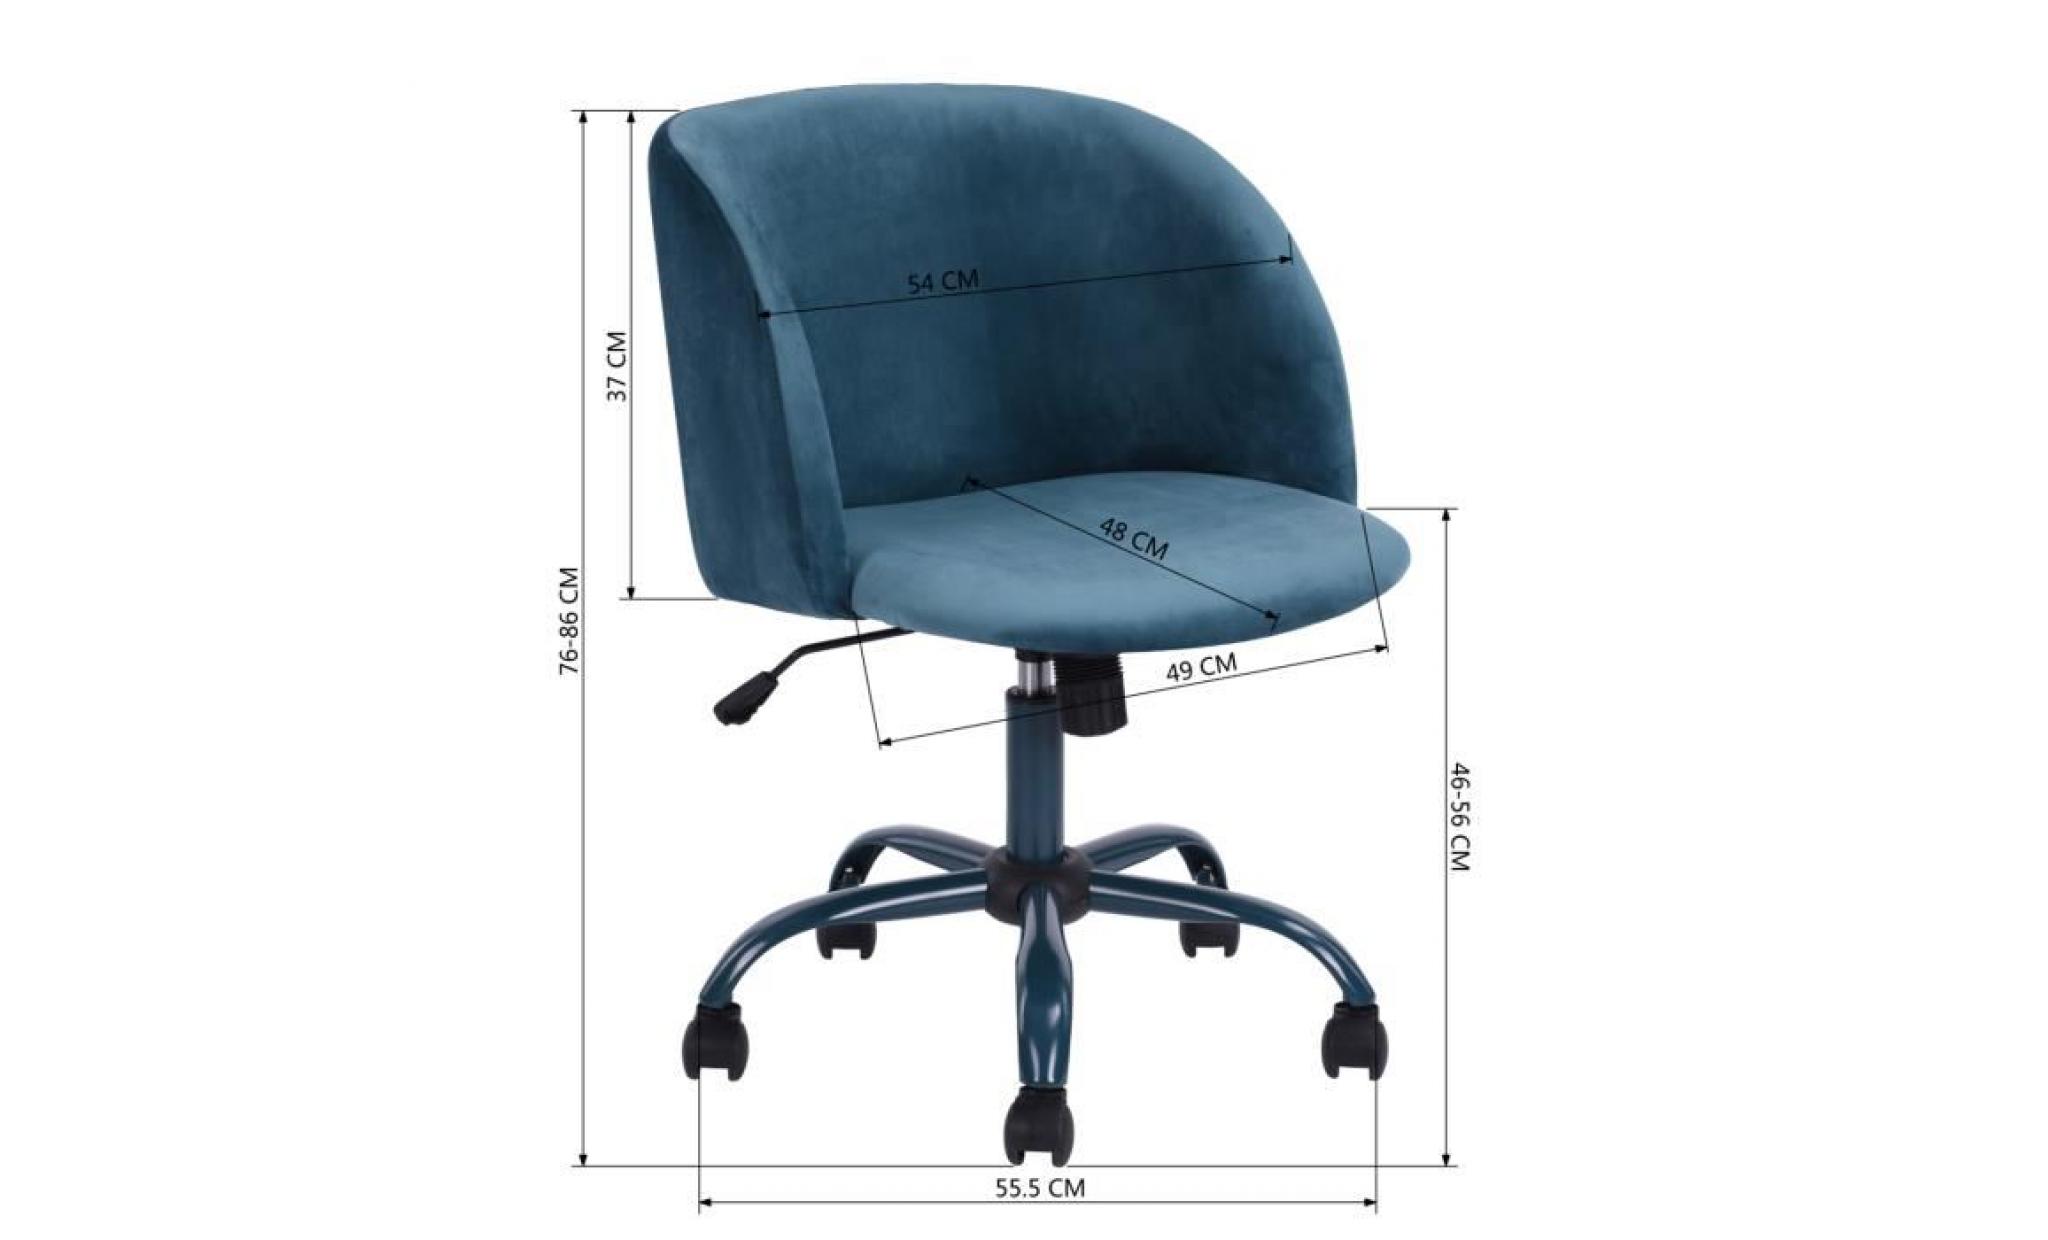 homy casa fauteuil de bureau pivotante 360 degrés hauteur réglable siège souple et comfortable en fabric,bleu pas cher